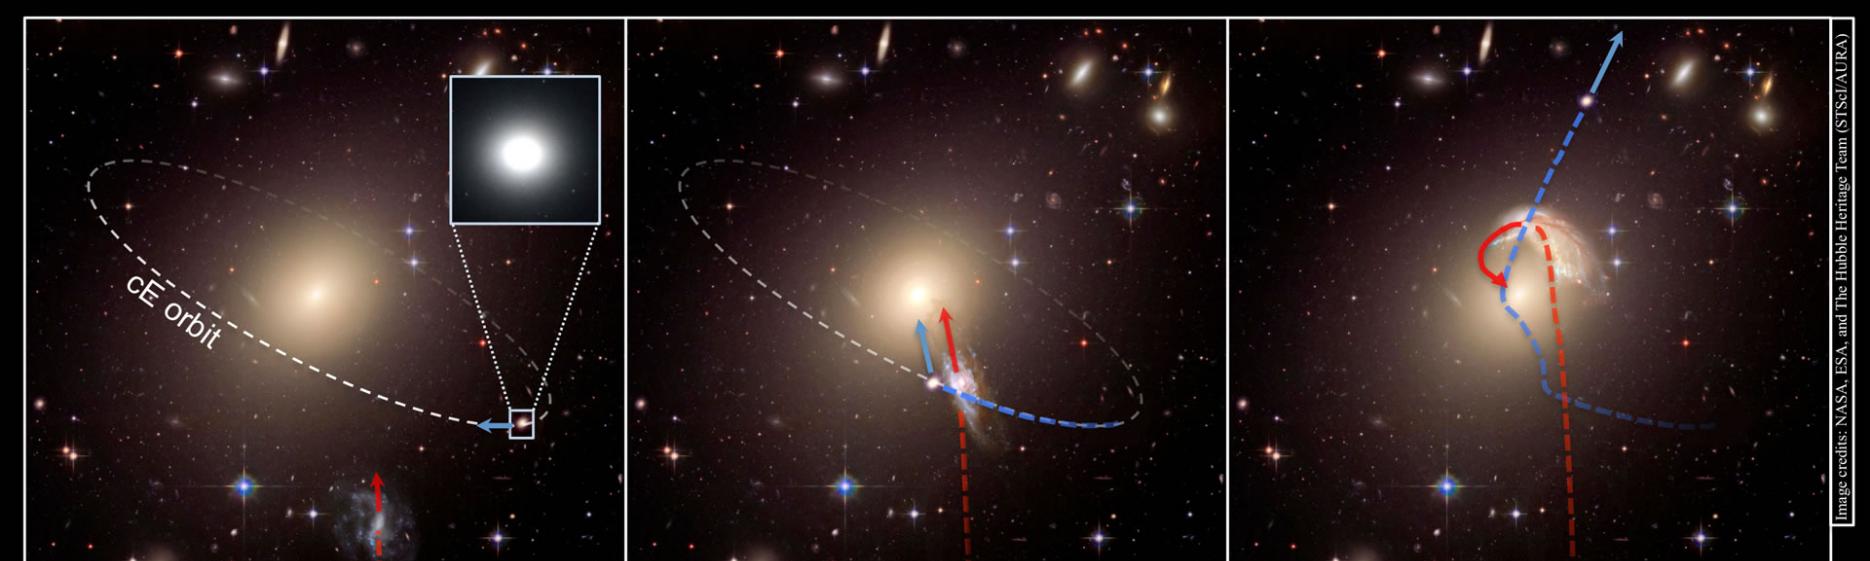 这是利用哈勃望远镜的历史档案图片绘制的一幅插图；这幅插图展示了三个星系的紧密接触过程，这个过程中还带有一个椭圆星系的引力作用。这幅插图展现的是一个孤立的椭圆星系